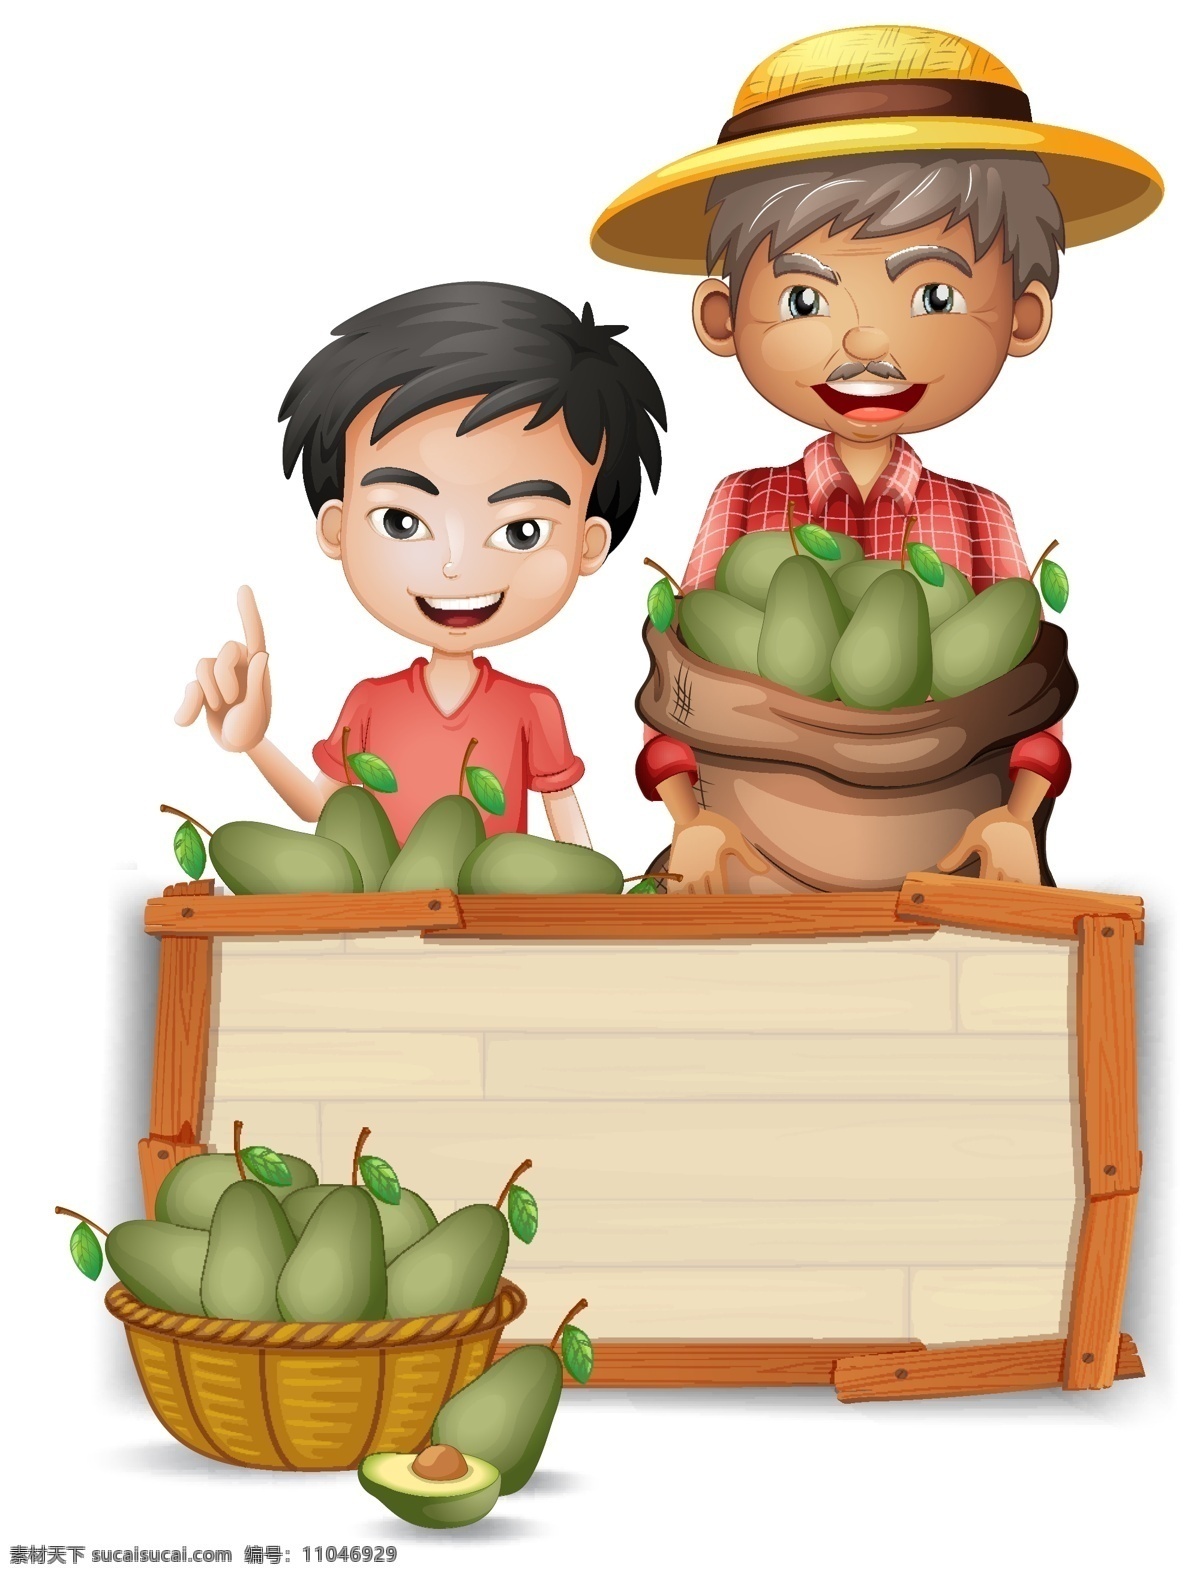 果蔬和儿童 儿童 农民 农业 手绘果蔬 菜单 水果 蔬菜 餐饮 美食 手绘 清新 卡通 有机 健康 营养 绿色 卡通设计